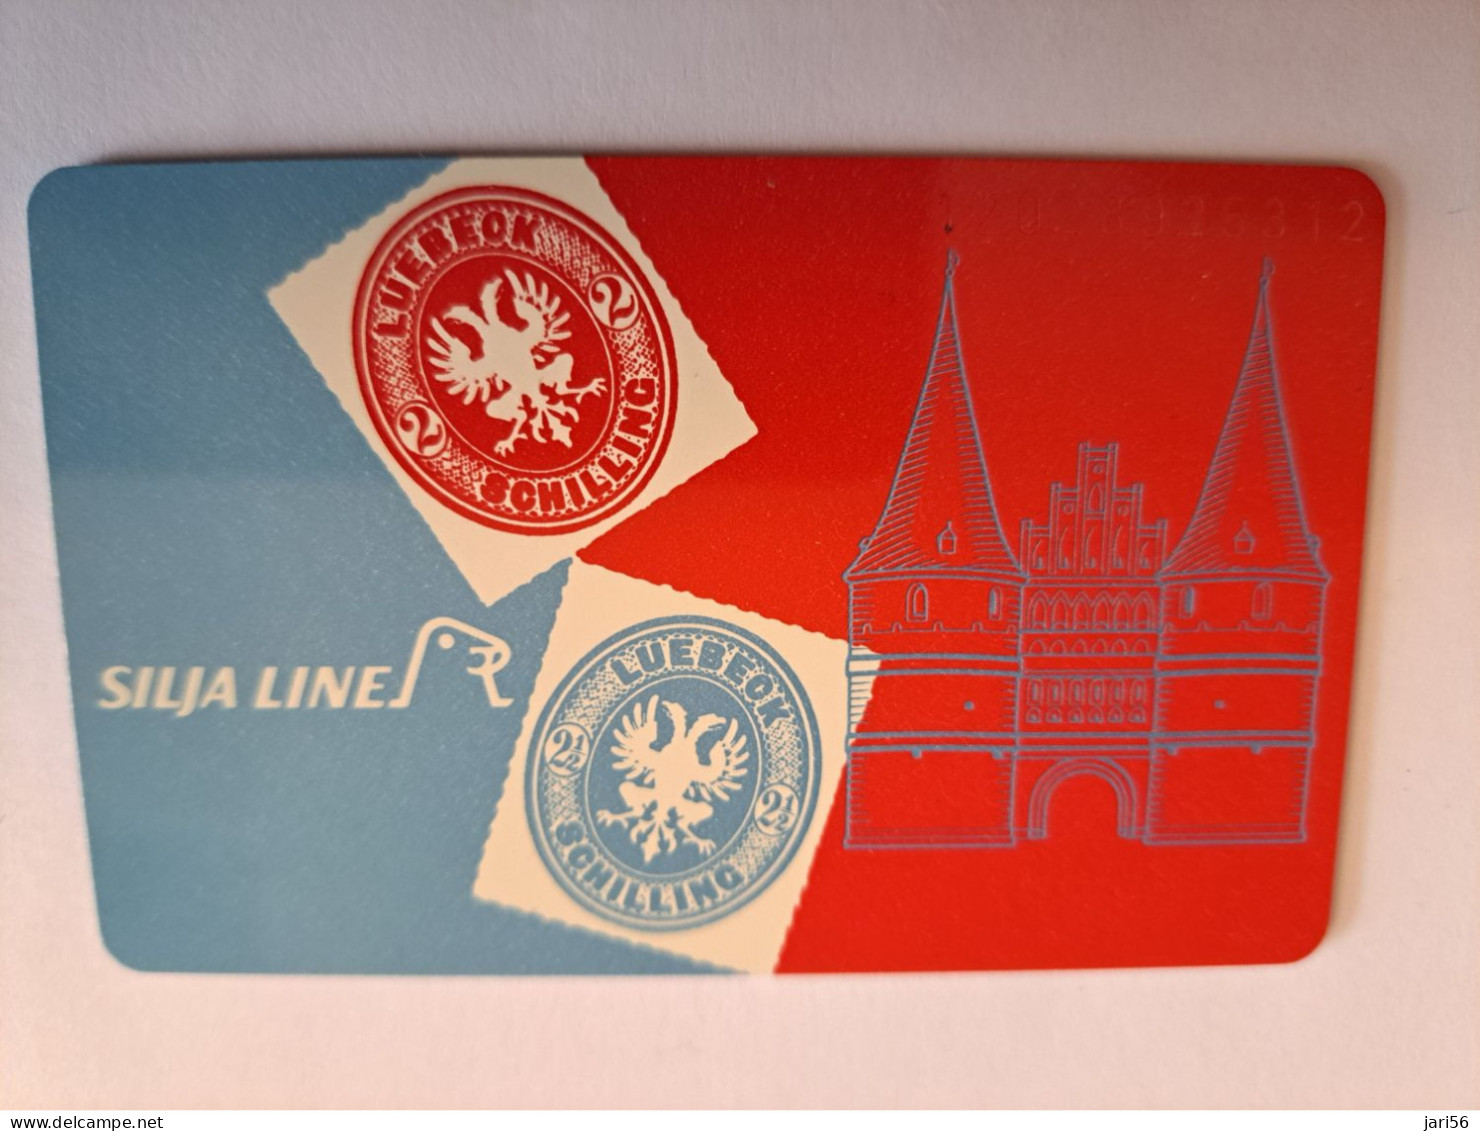 DUITSLAND/ GERMANY  CHIPCARD /SILJA LINE/ LUBECK/ TRAVEMUNDE/HELSINKI/STOCKHOLM    O 020/  5000 EX / MINT CARD **16605** - K-Series : Série Clients